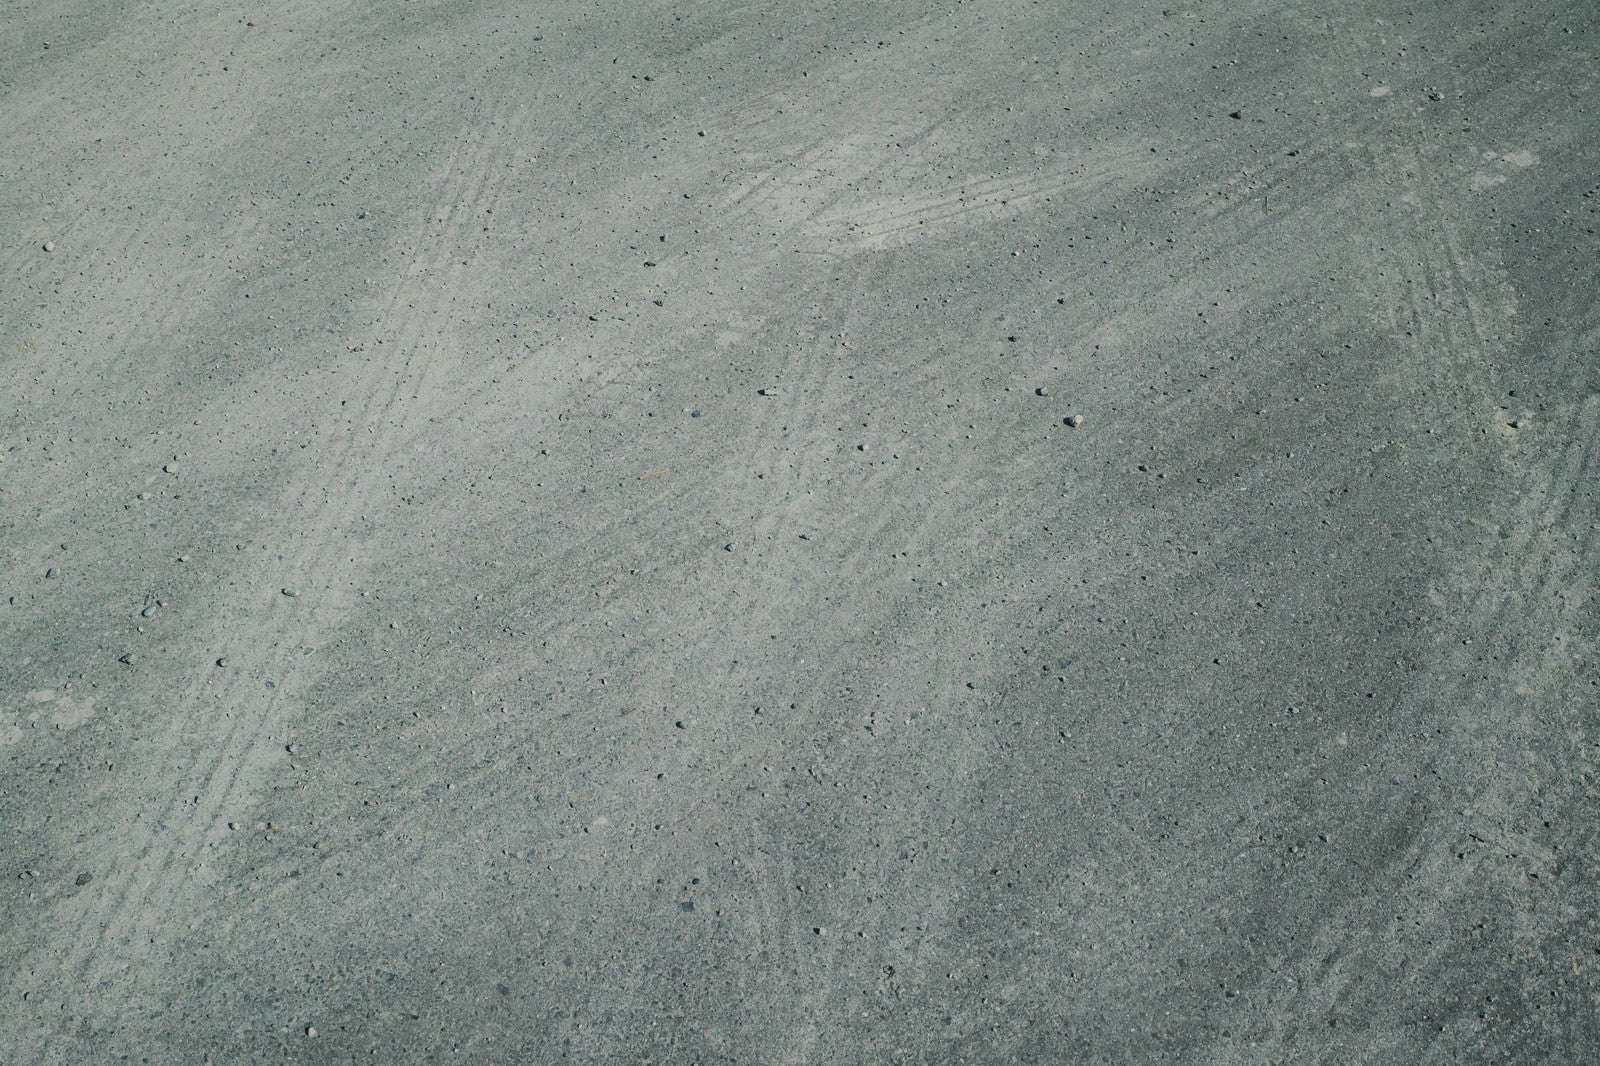 「コンクリートに残る何重のタイヤ跡（テクスチャー）」の写真